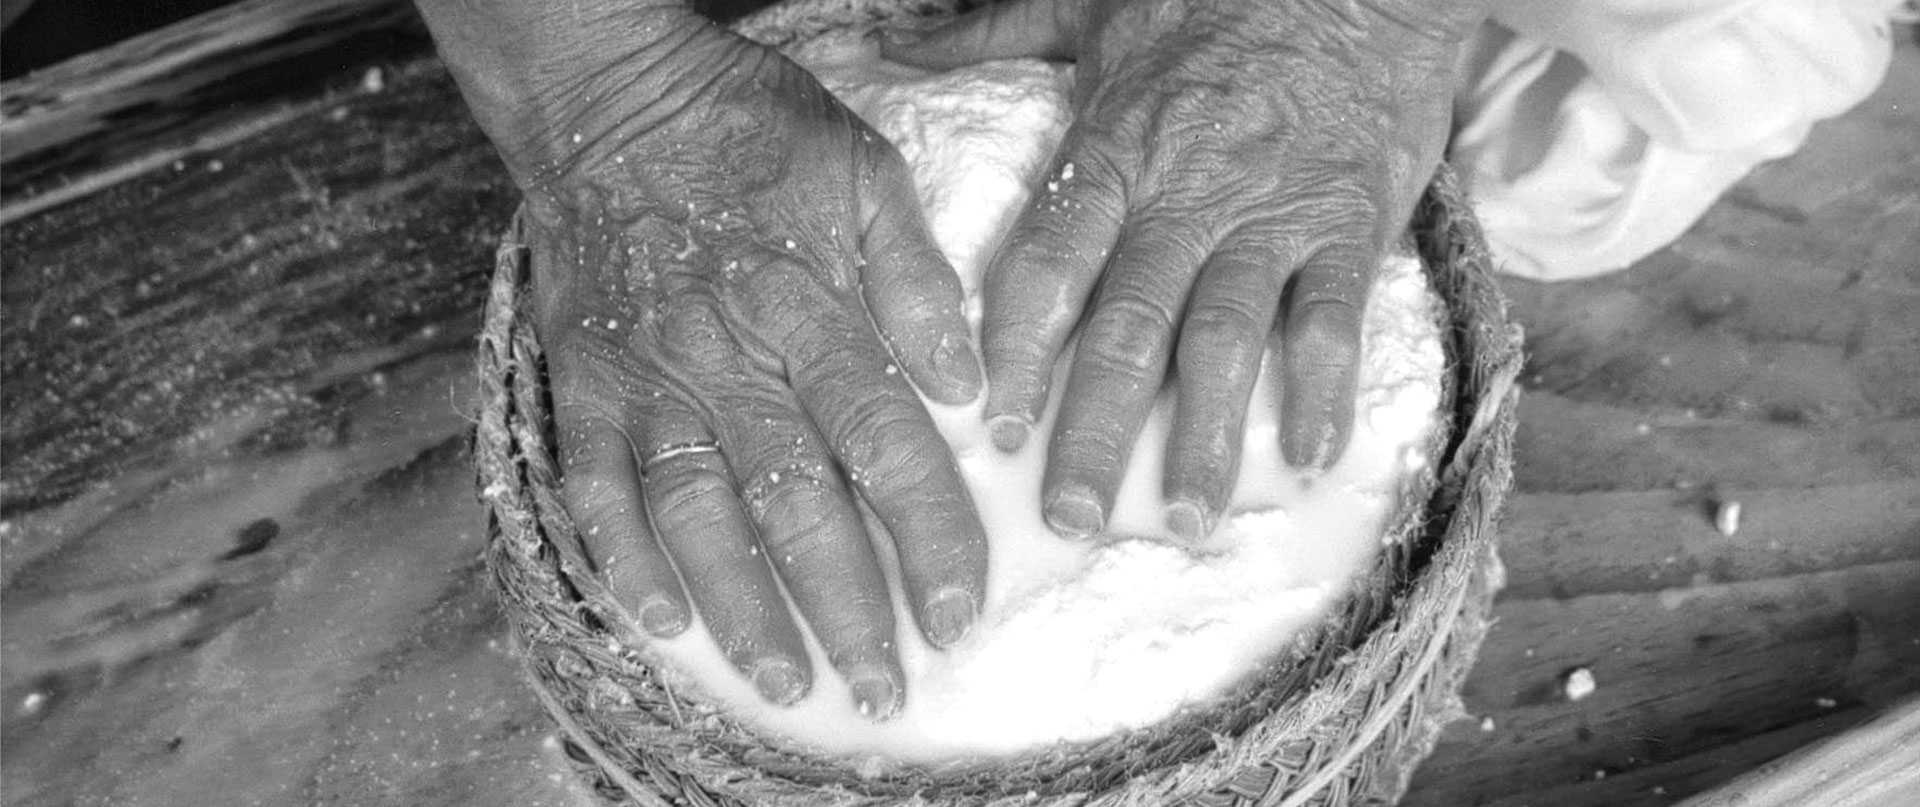 foto de manos preparando el queso